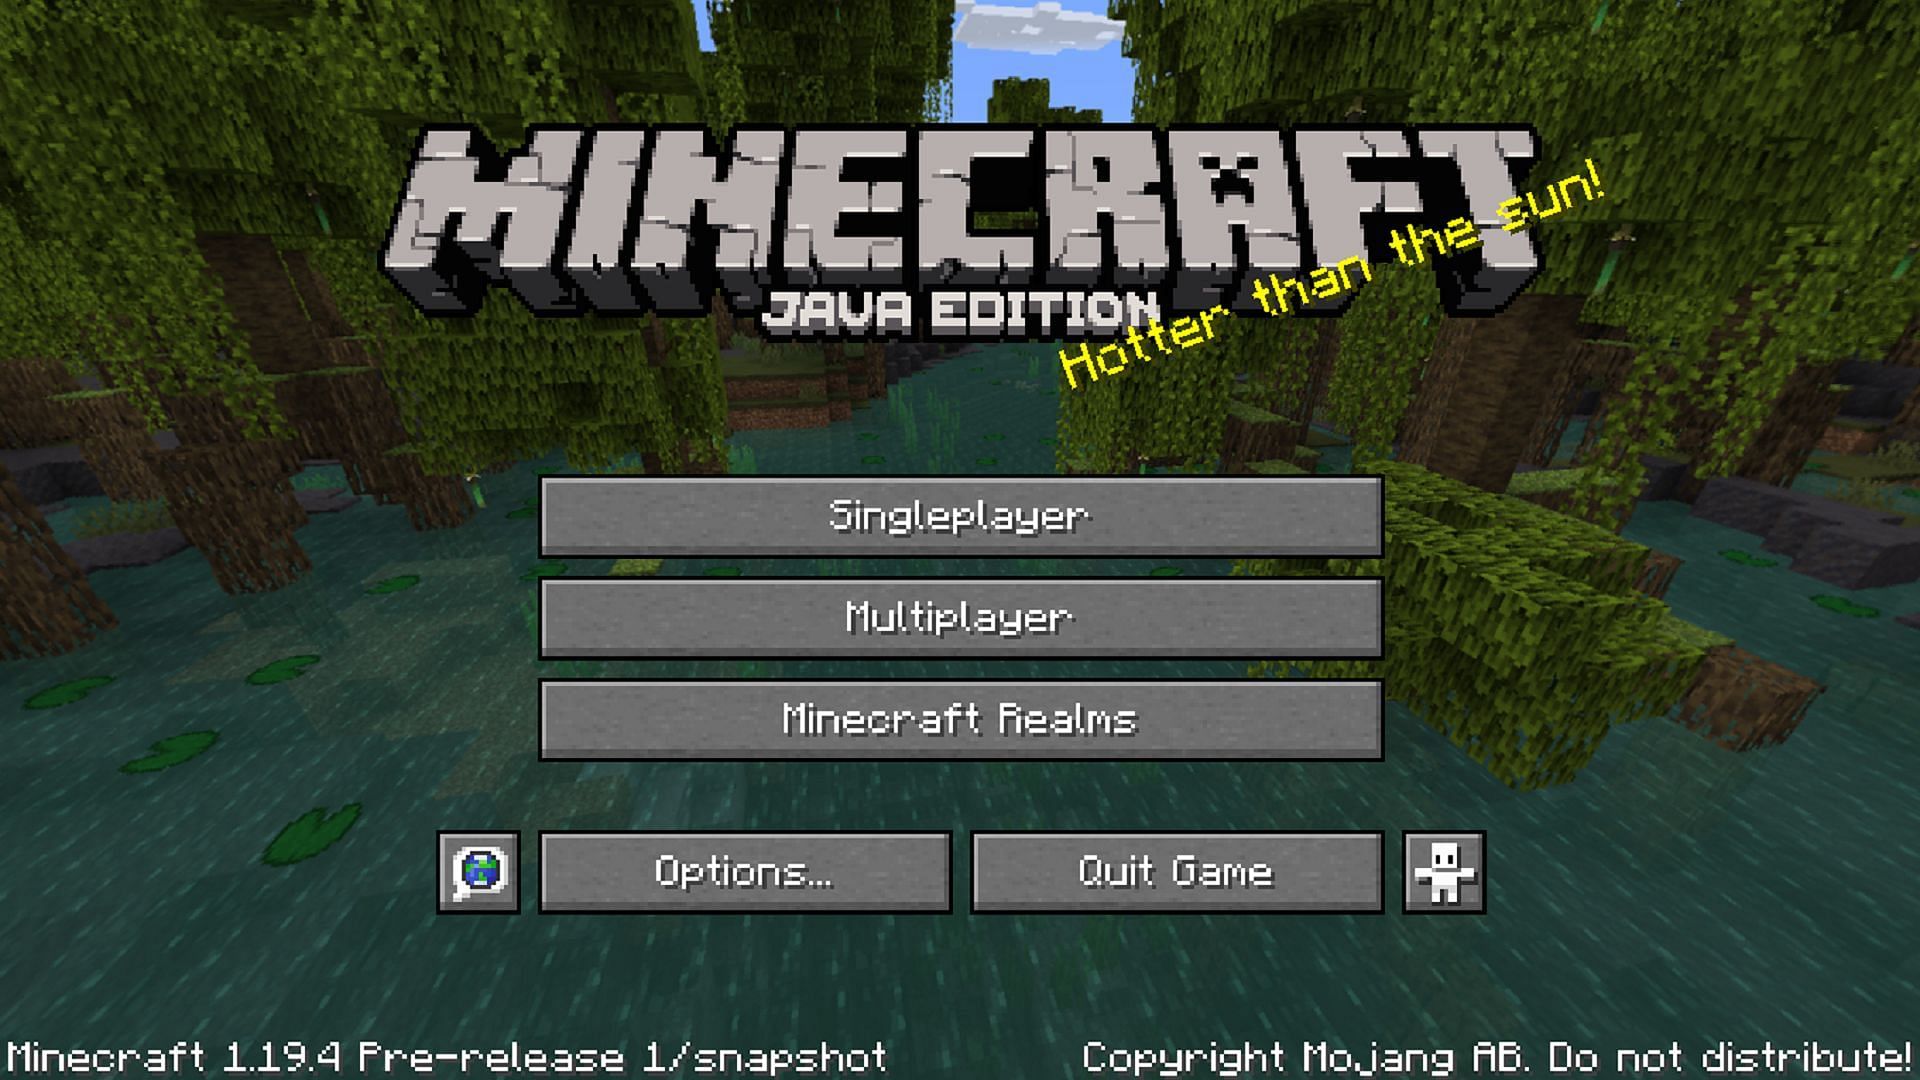 Minecraft 1.19 Download Apk Mediafire🔥